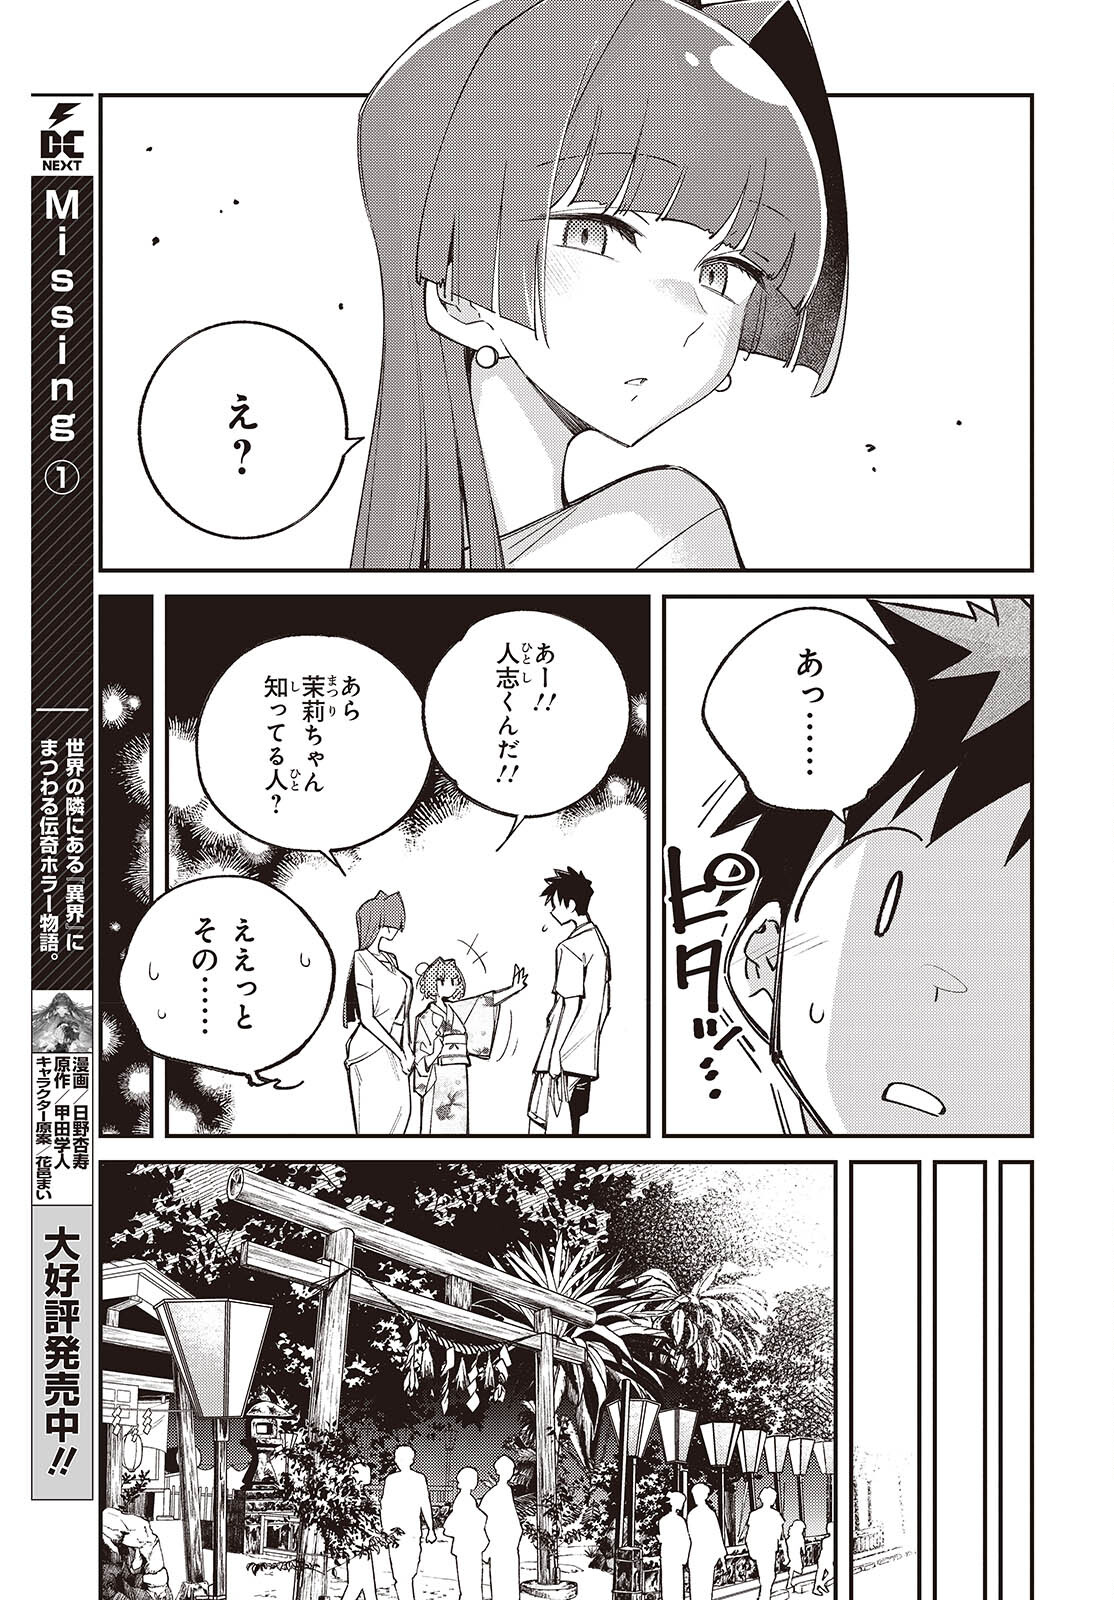 Ikimono-suki no Anima-san ni wa Honno Choppiri Doku ga aru - Chapter 10 - Page 7